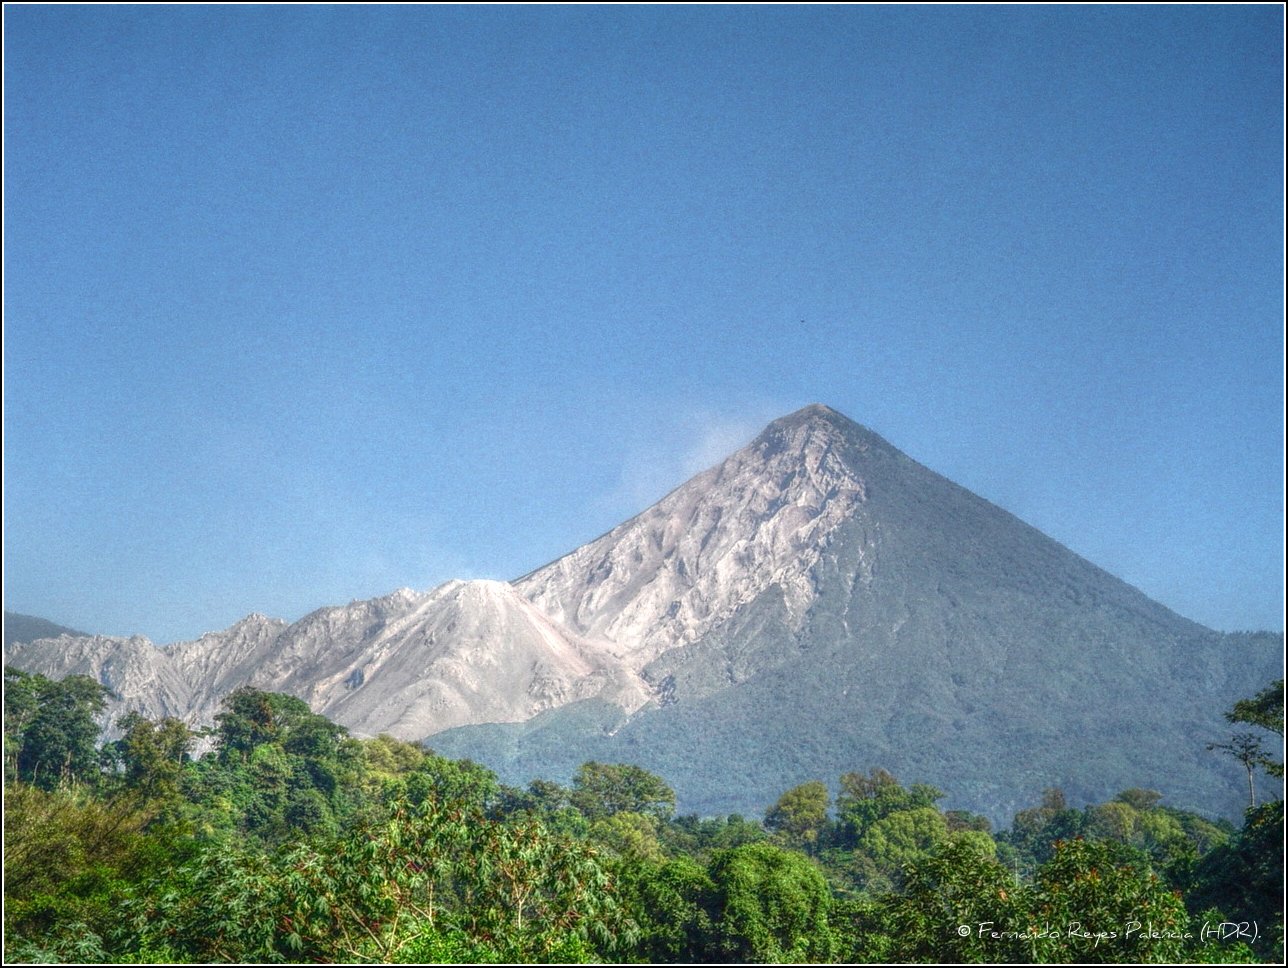 Guatemala, Volcan Santa Maria, Volcanes Santiaguito y Santa Maria, Walkopedia